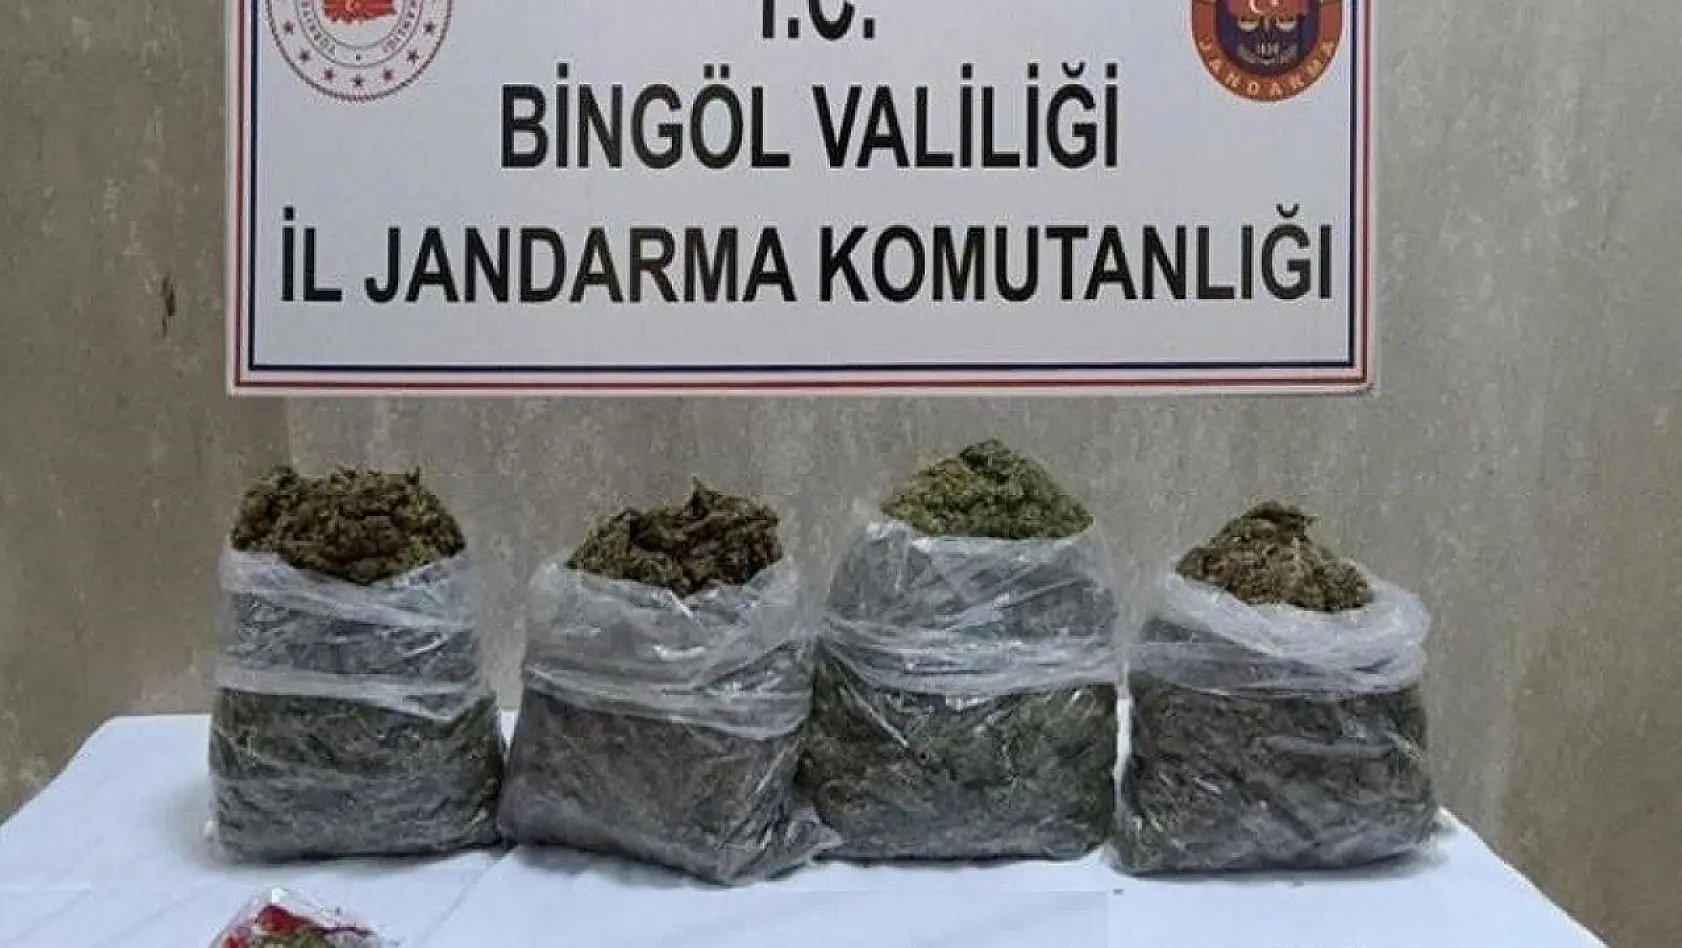 Bingöl'de araç içerisinde uyuşturucu ele geçirildi: 3 gözaltı